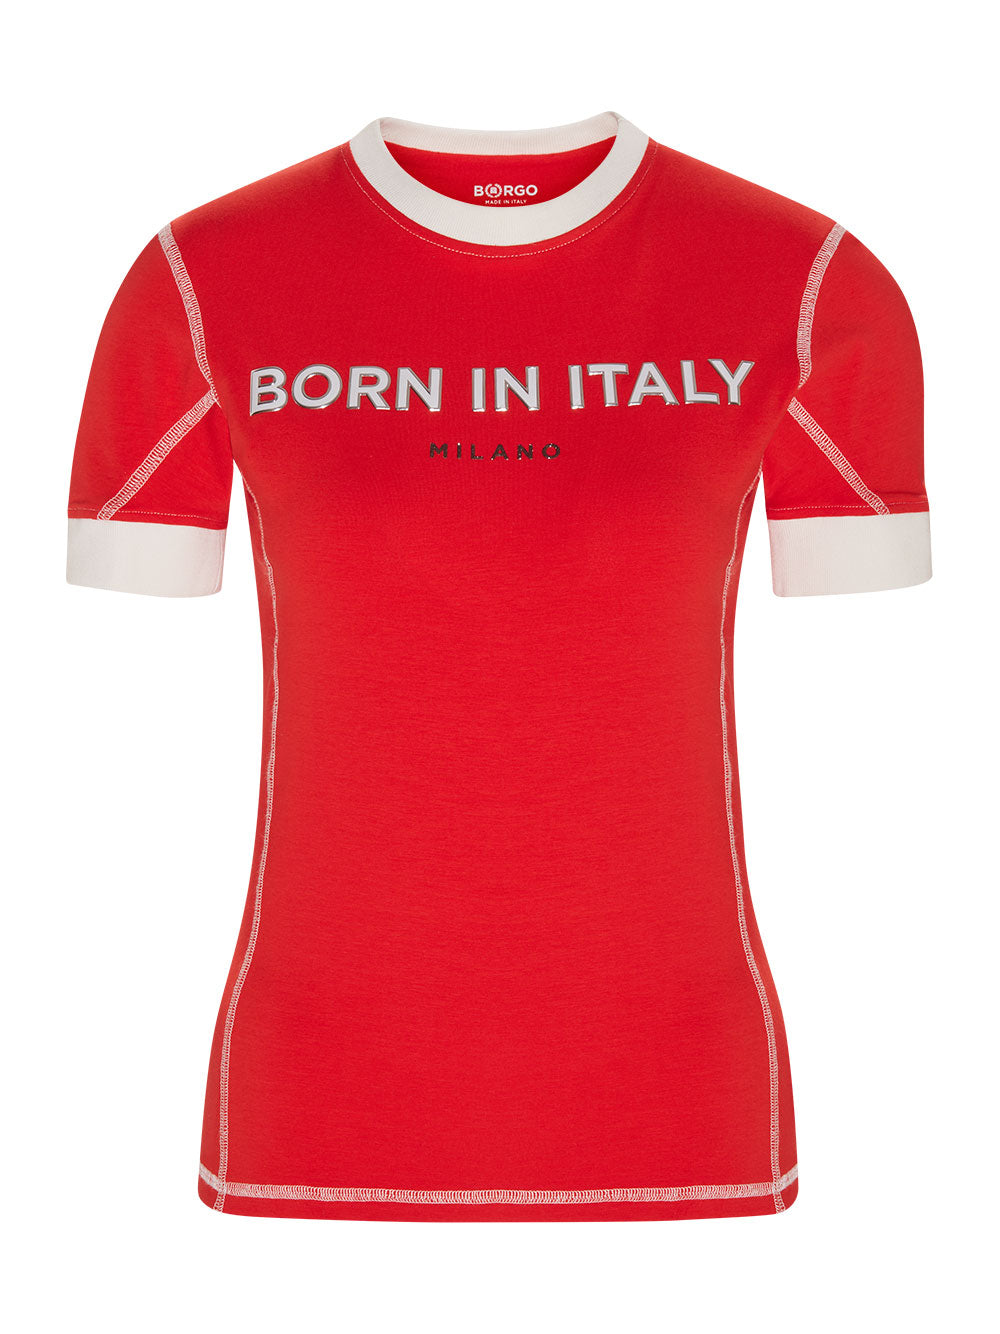 BORGO Fiorano Rosso T-Shirt